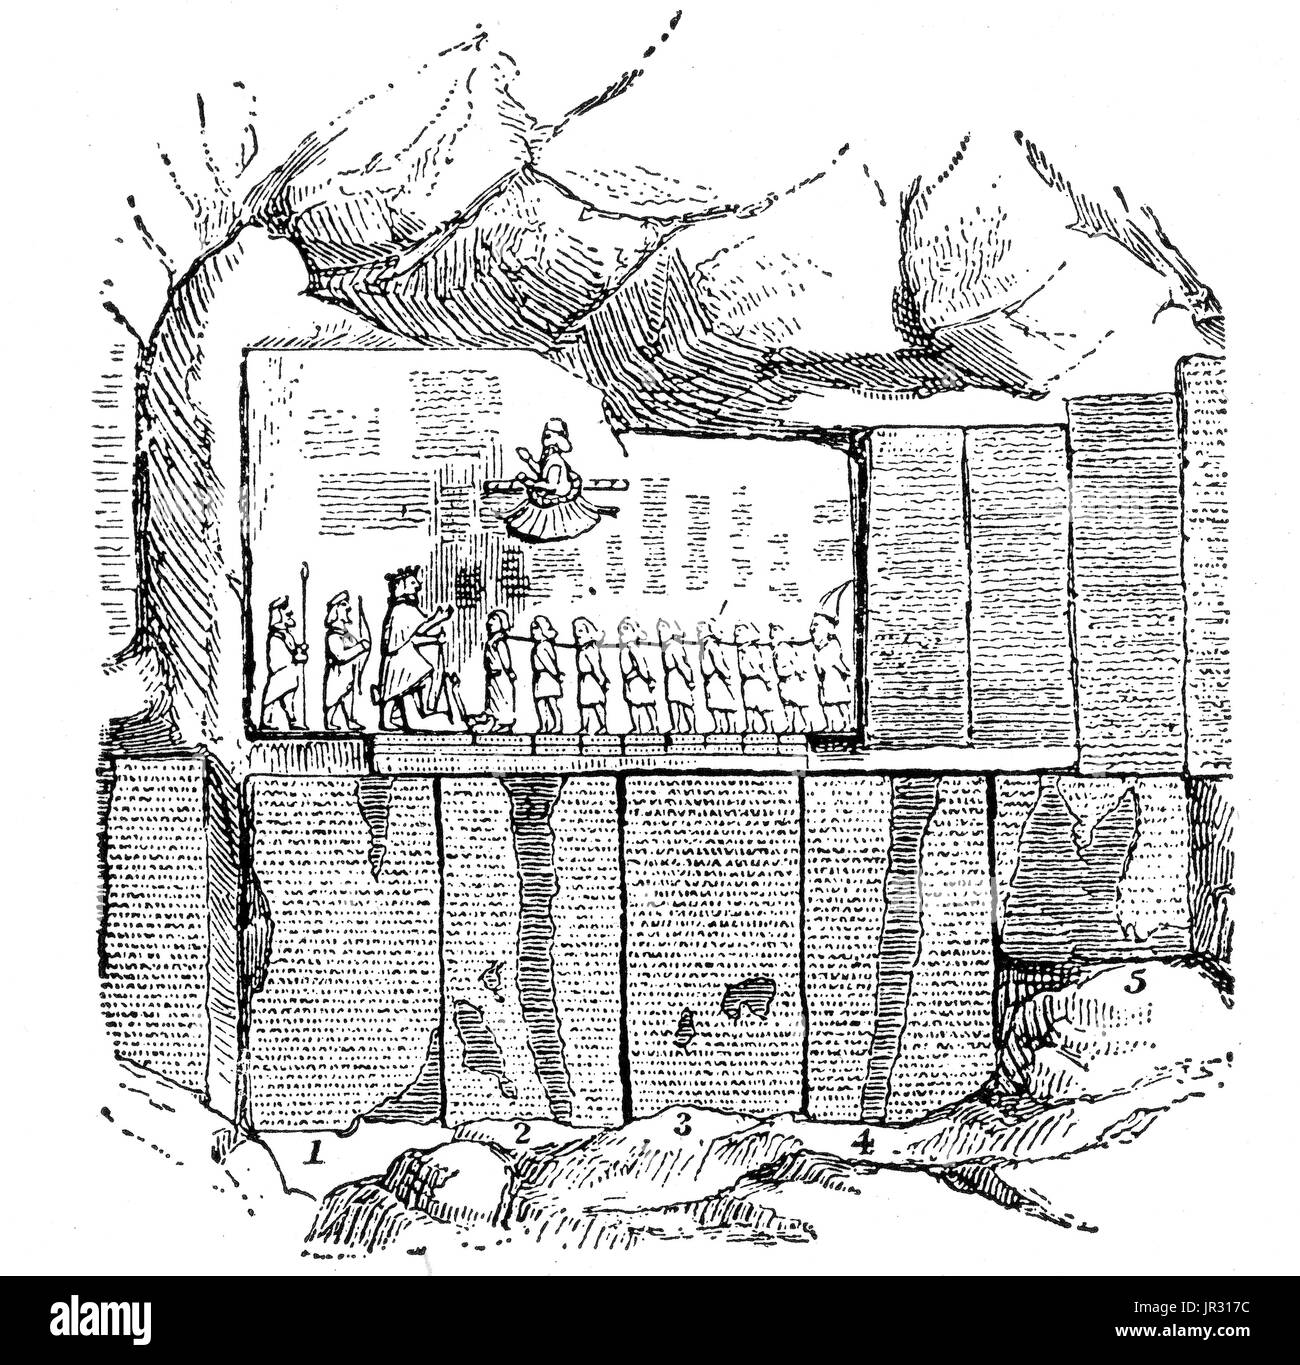 El Behistun Inscripción Inscripción es multilingüe y roca grande alivio en un acantilado en el monte Behistun en la provincia de Kermanshah de Irán, cerca de la ciudad de Kermanshah, en el oeste de Irán. Escrito por Darío el Grande en algún momento entre el 522 A.C. y el 486 A.C. la inscripción comienza con una breve autobiografía de Darío, incluida su ascendencia y linaje. Posteriormente en la inscripción, Darius proporciona una larga secuencia de eventos tras la muerte de Ciro el Grande y de Cambises II, en el que peleó 19 batallas en un período de un año para poner abajo varias rebeliones en todo el Imperio Persa. D Foto de stock